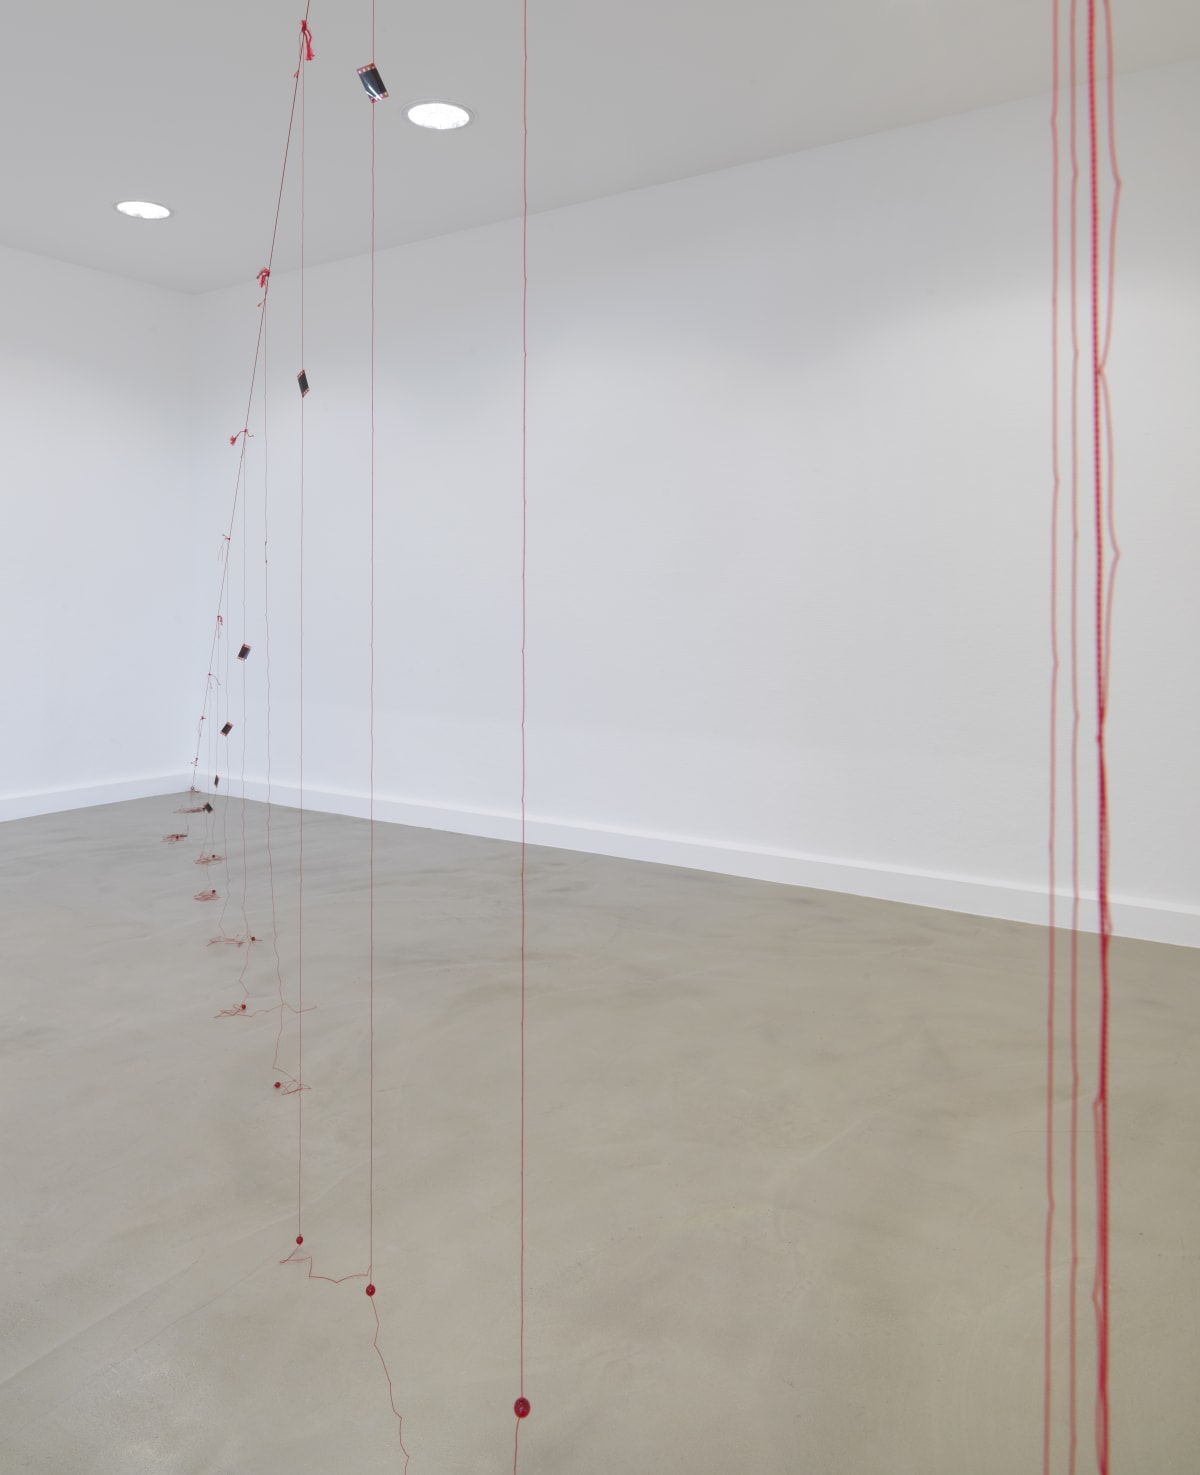 Stephen Prina at Kunst Halle Sankt Gallen – Art Viewer